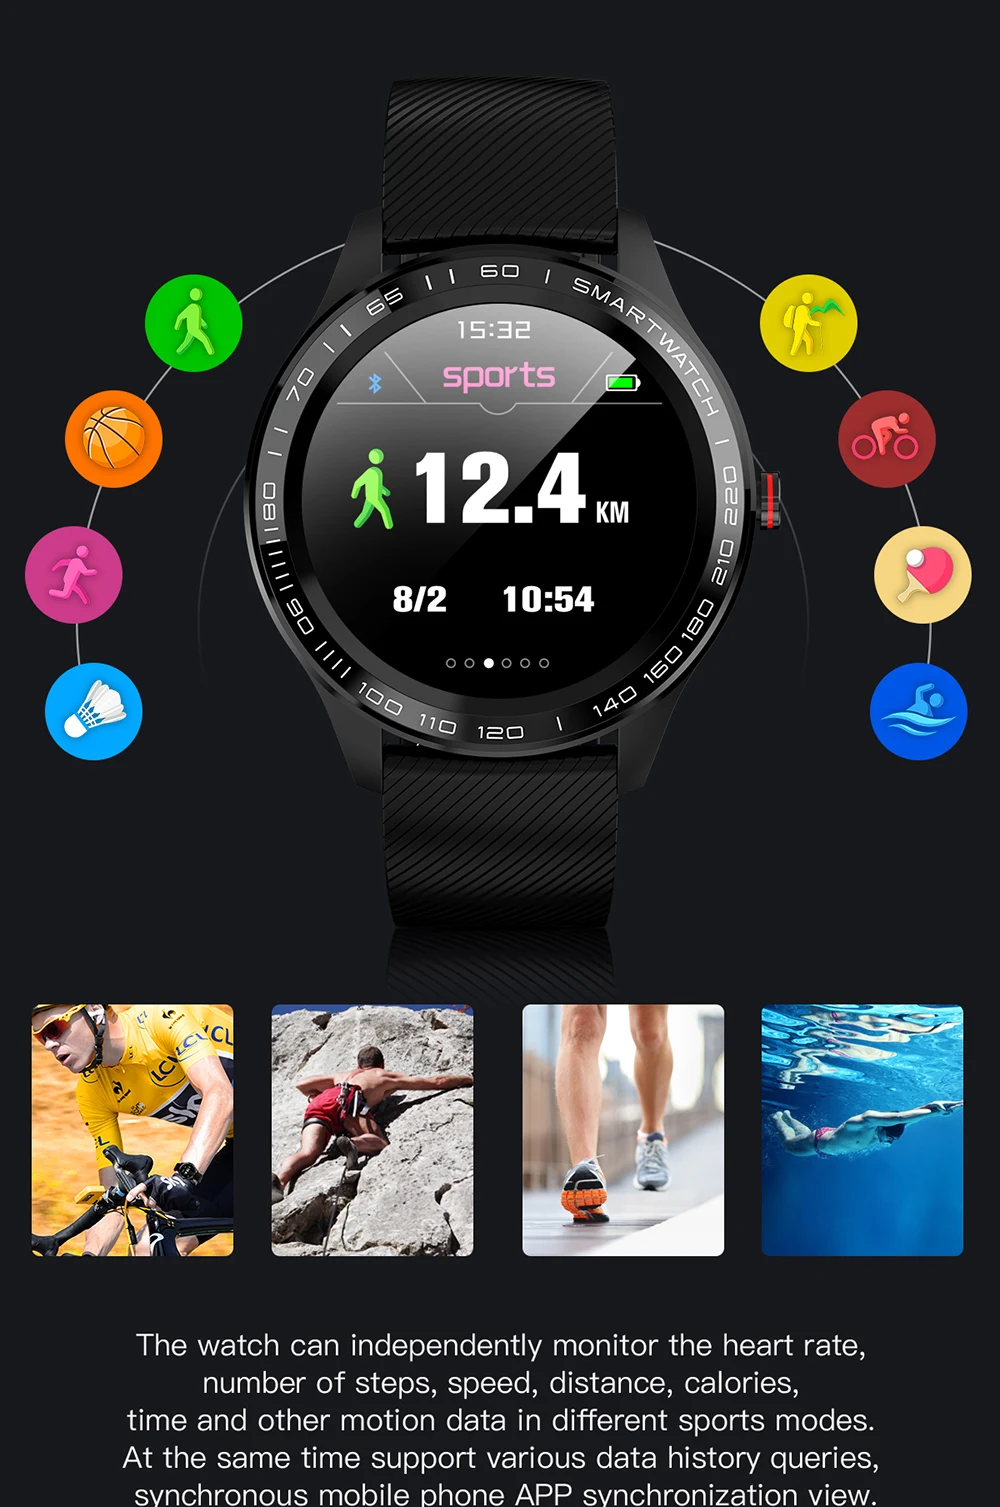 L9 ЭКГ Смарт часы для мужчин Полный Круглый мультисенсорный Smartwatch IP68 спортивные часы для мужчин Bluetooth напоминание/Музыка